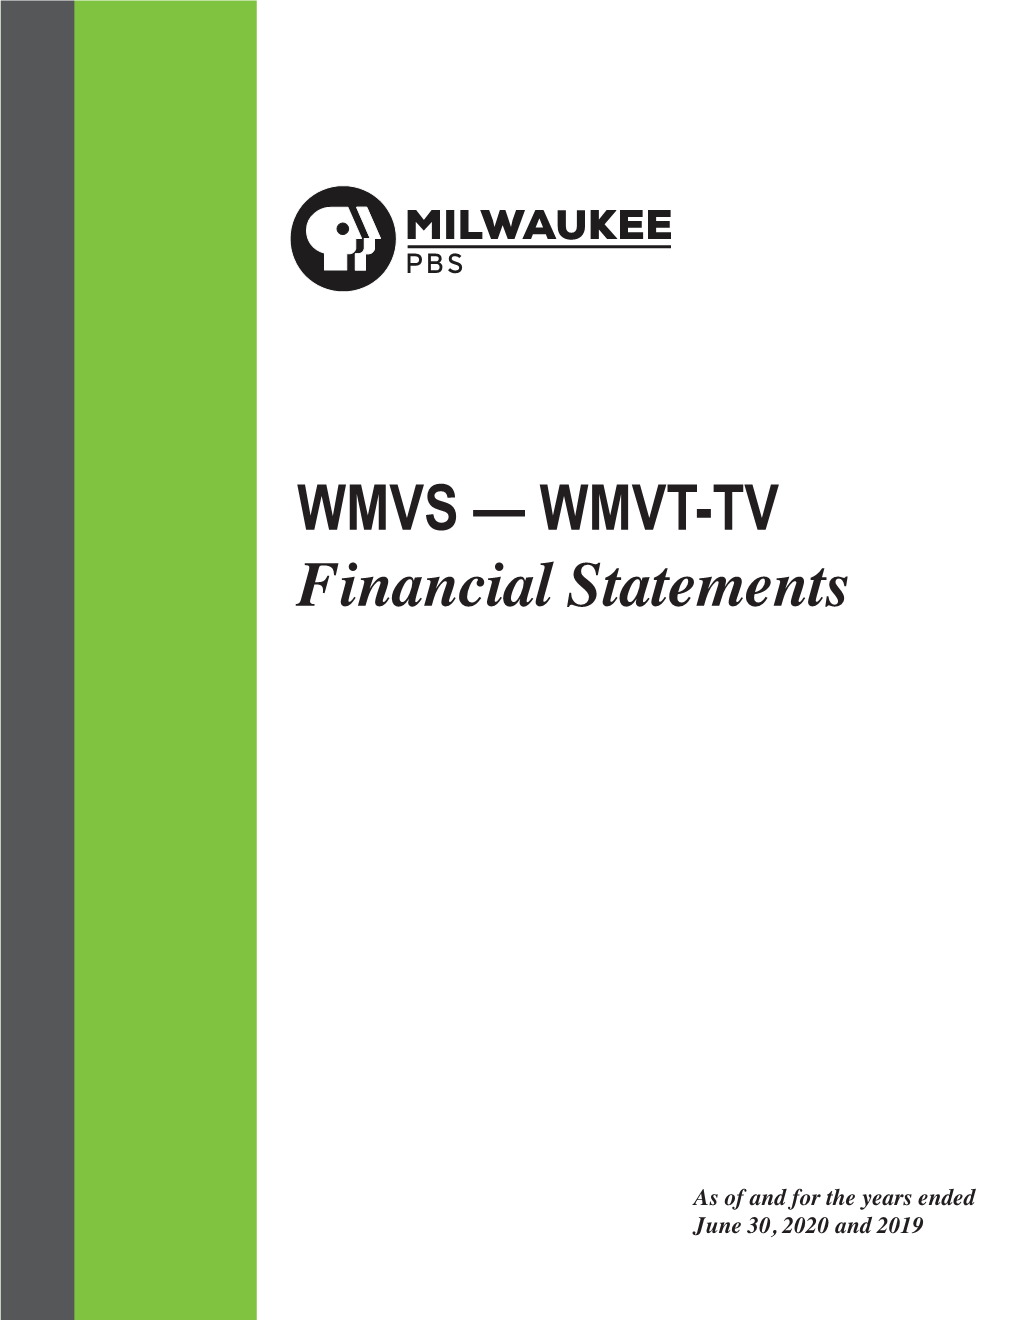 WMVS — WMVT-TV Financial Statements